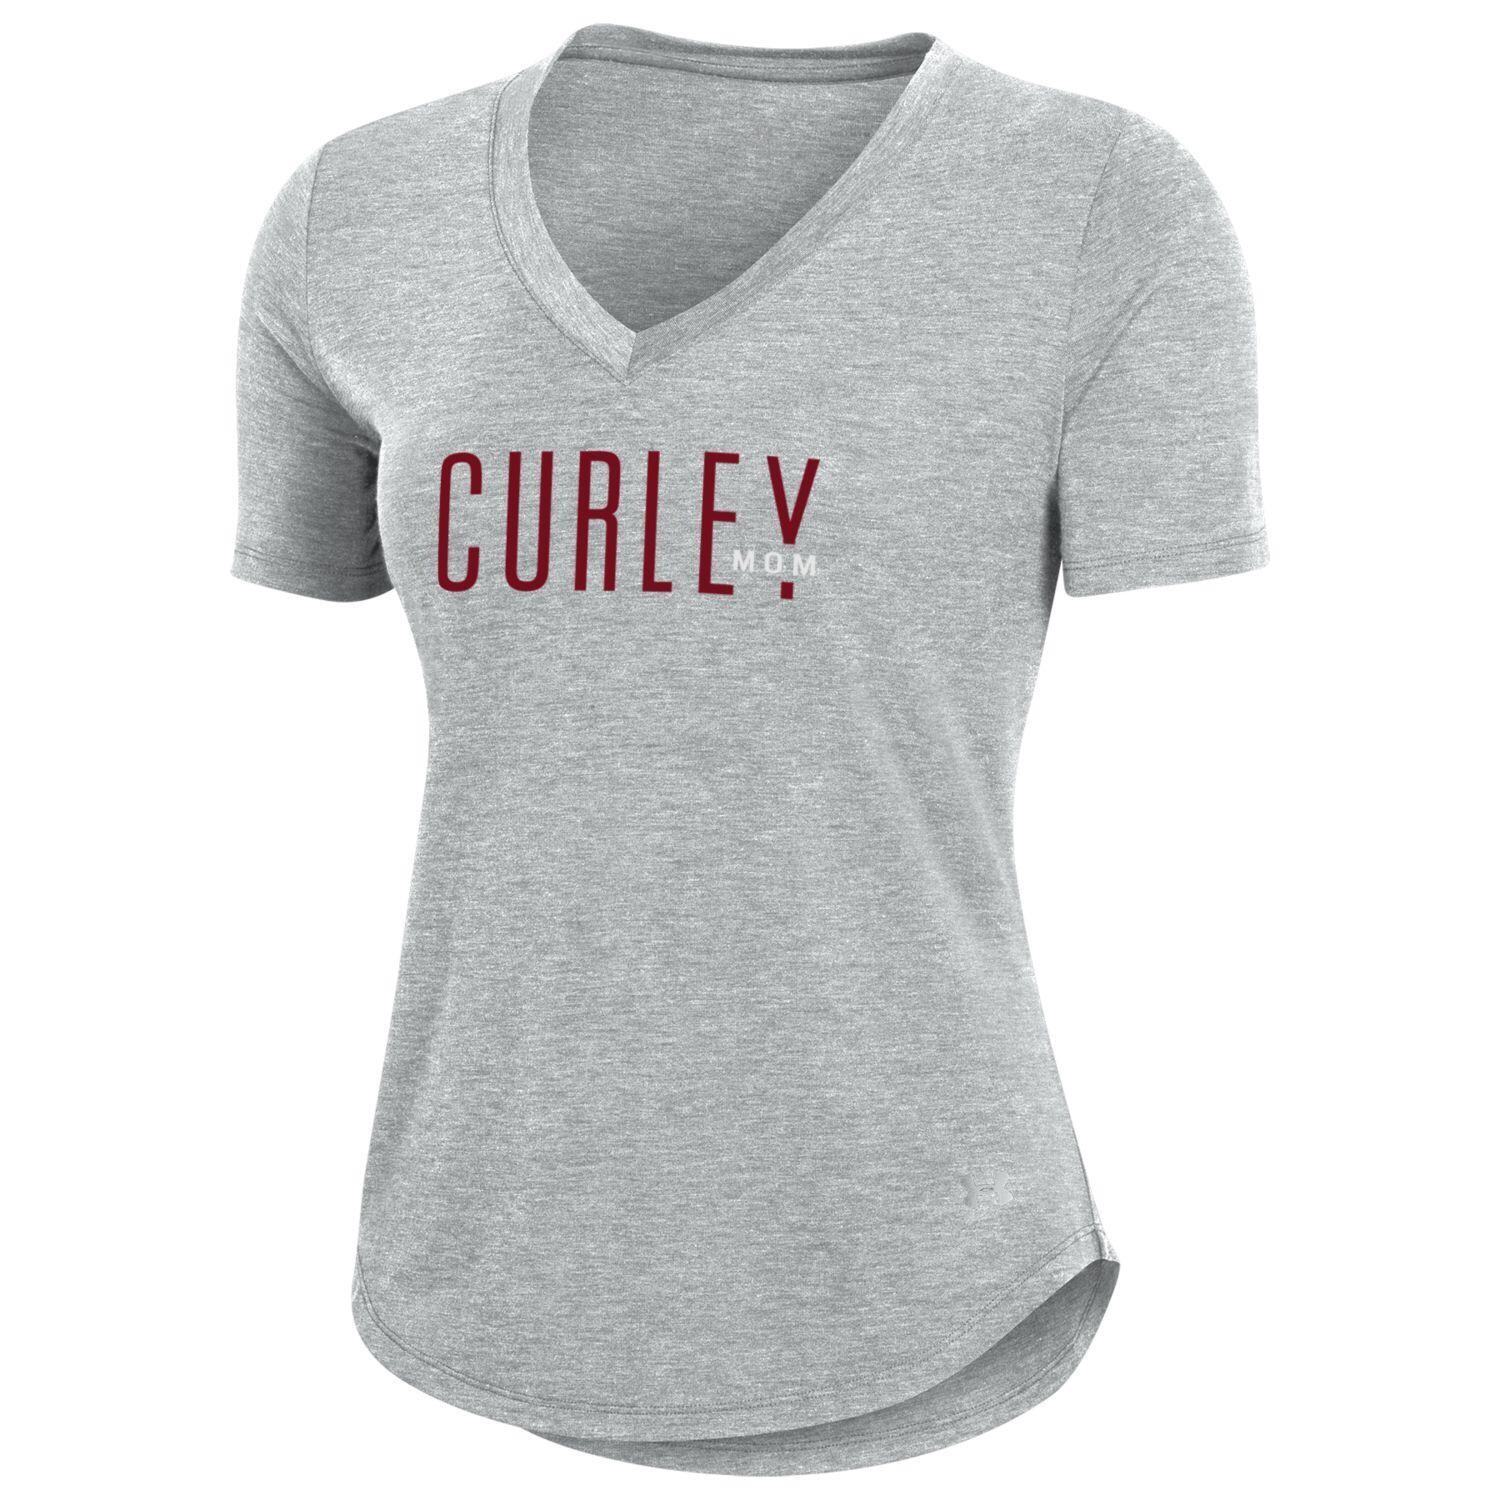 UA Womens V Neck Curley Mom T Shirt Silver M